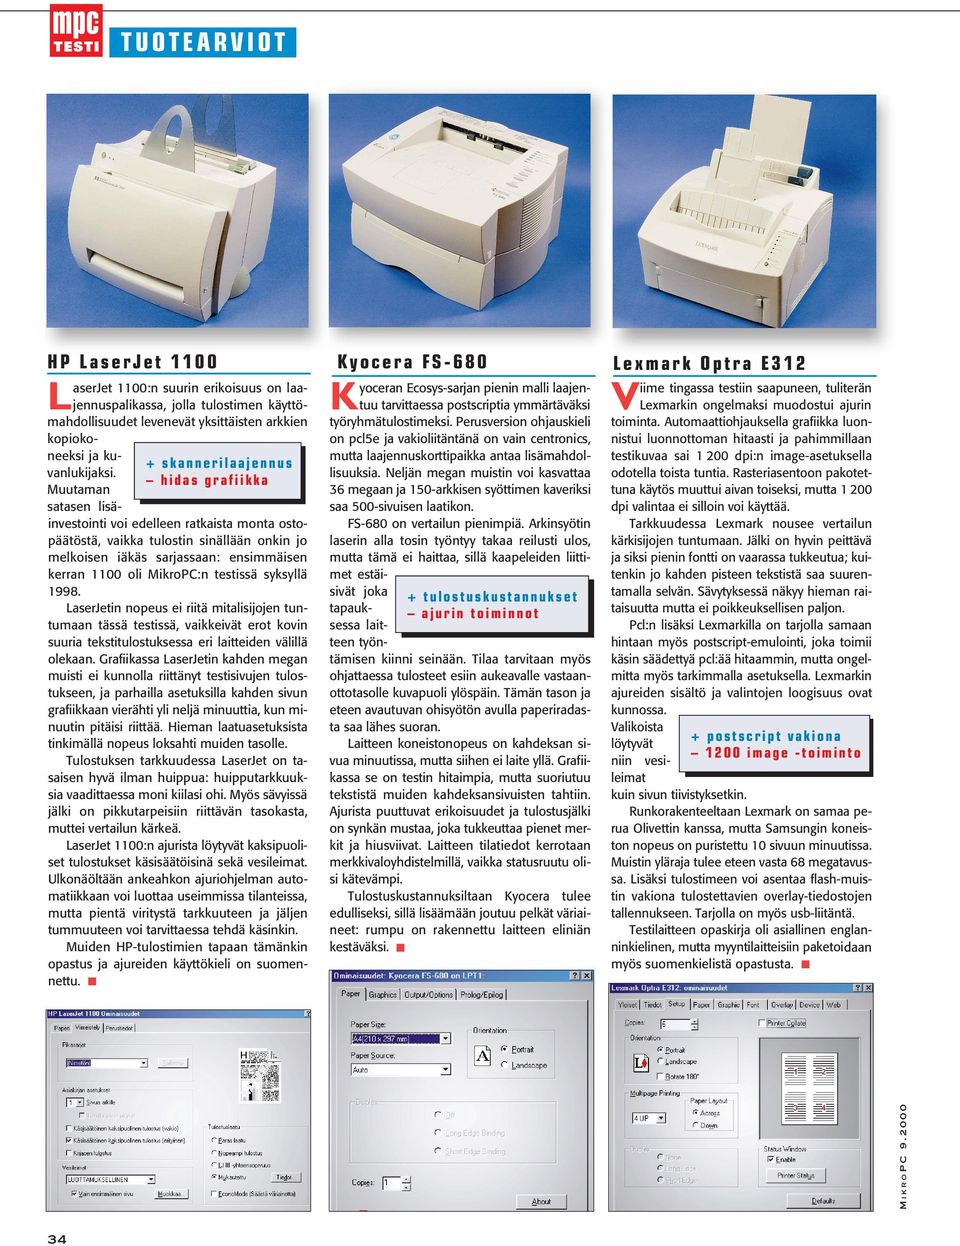 Muutaman satasen lisäinvestointi voi edelleen ratkaista monta ostopäätöstä, vaikka tulostin sinällään onkin jo melkoisen iäkäs sarjassaan: ensimmäisen kerran 1100 oli MikroPC:n testissä syksyllä 1998.